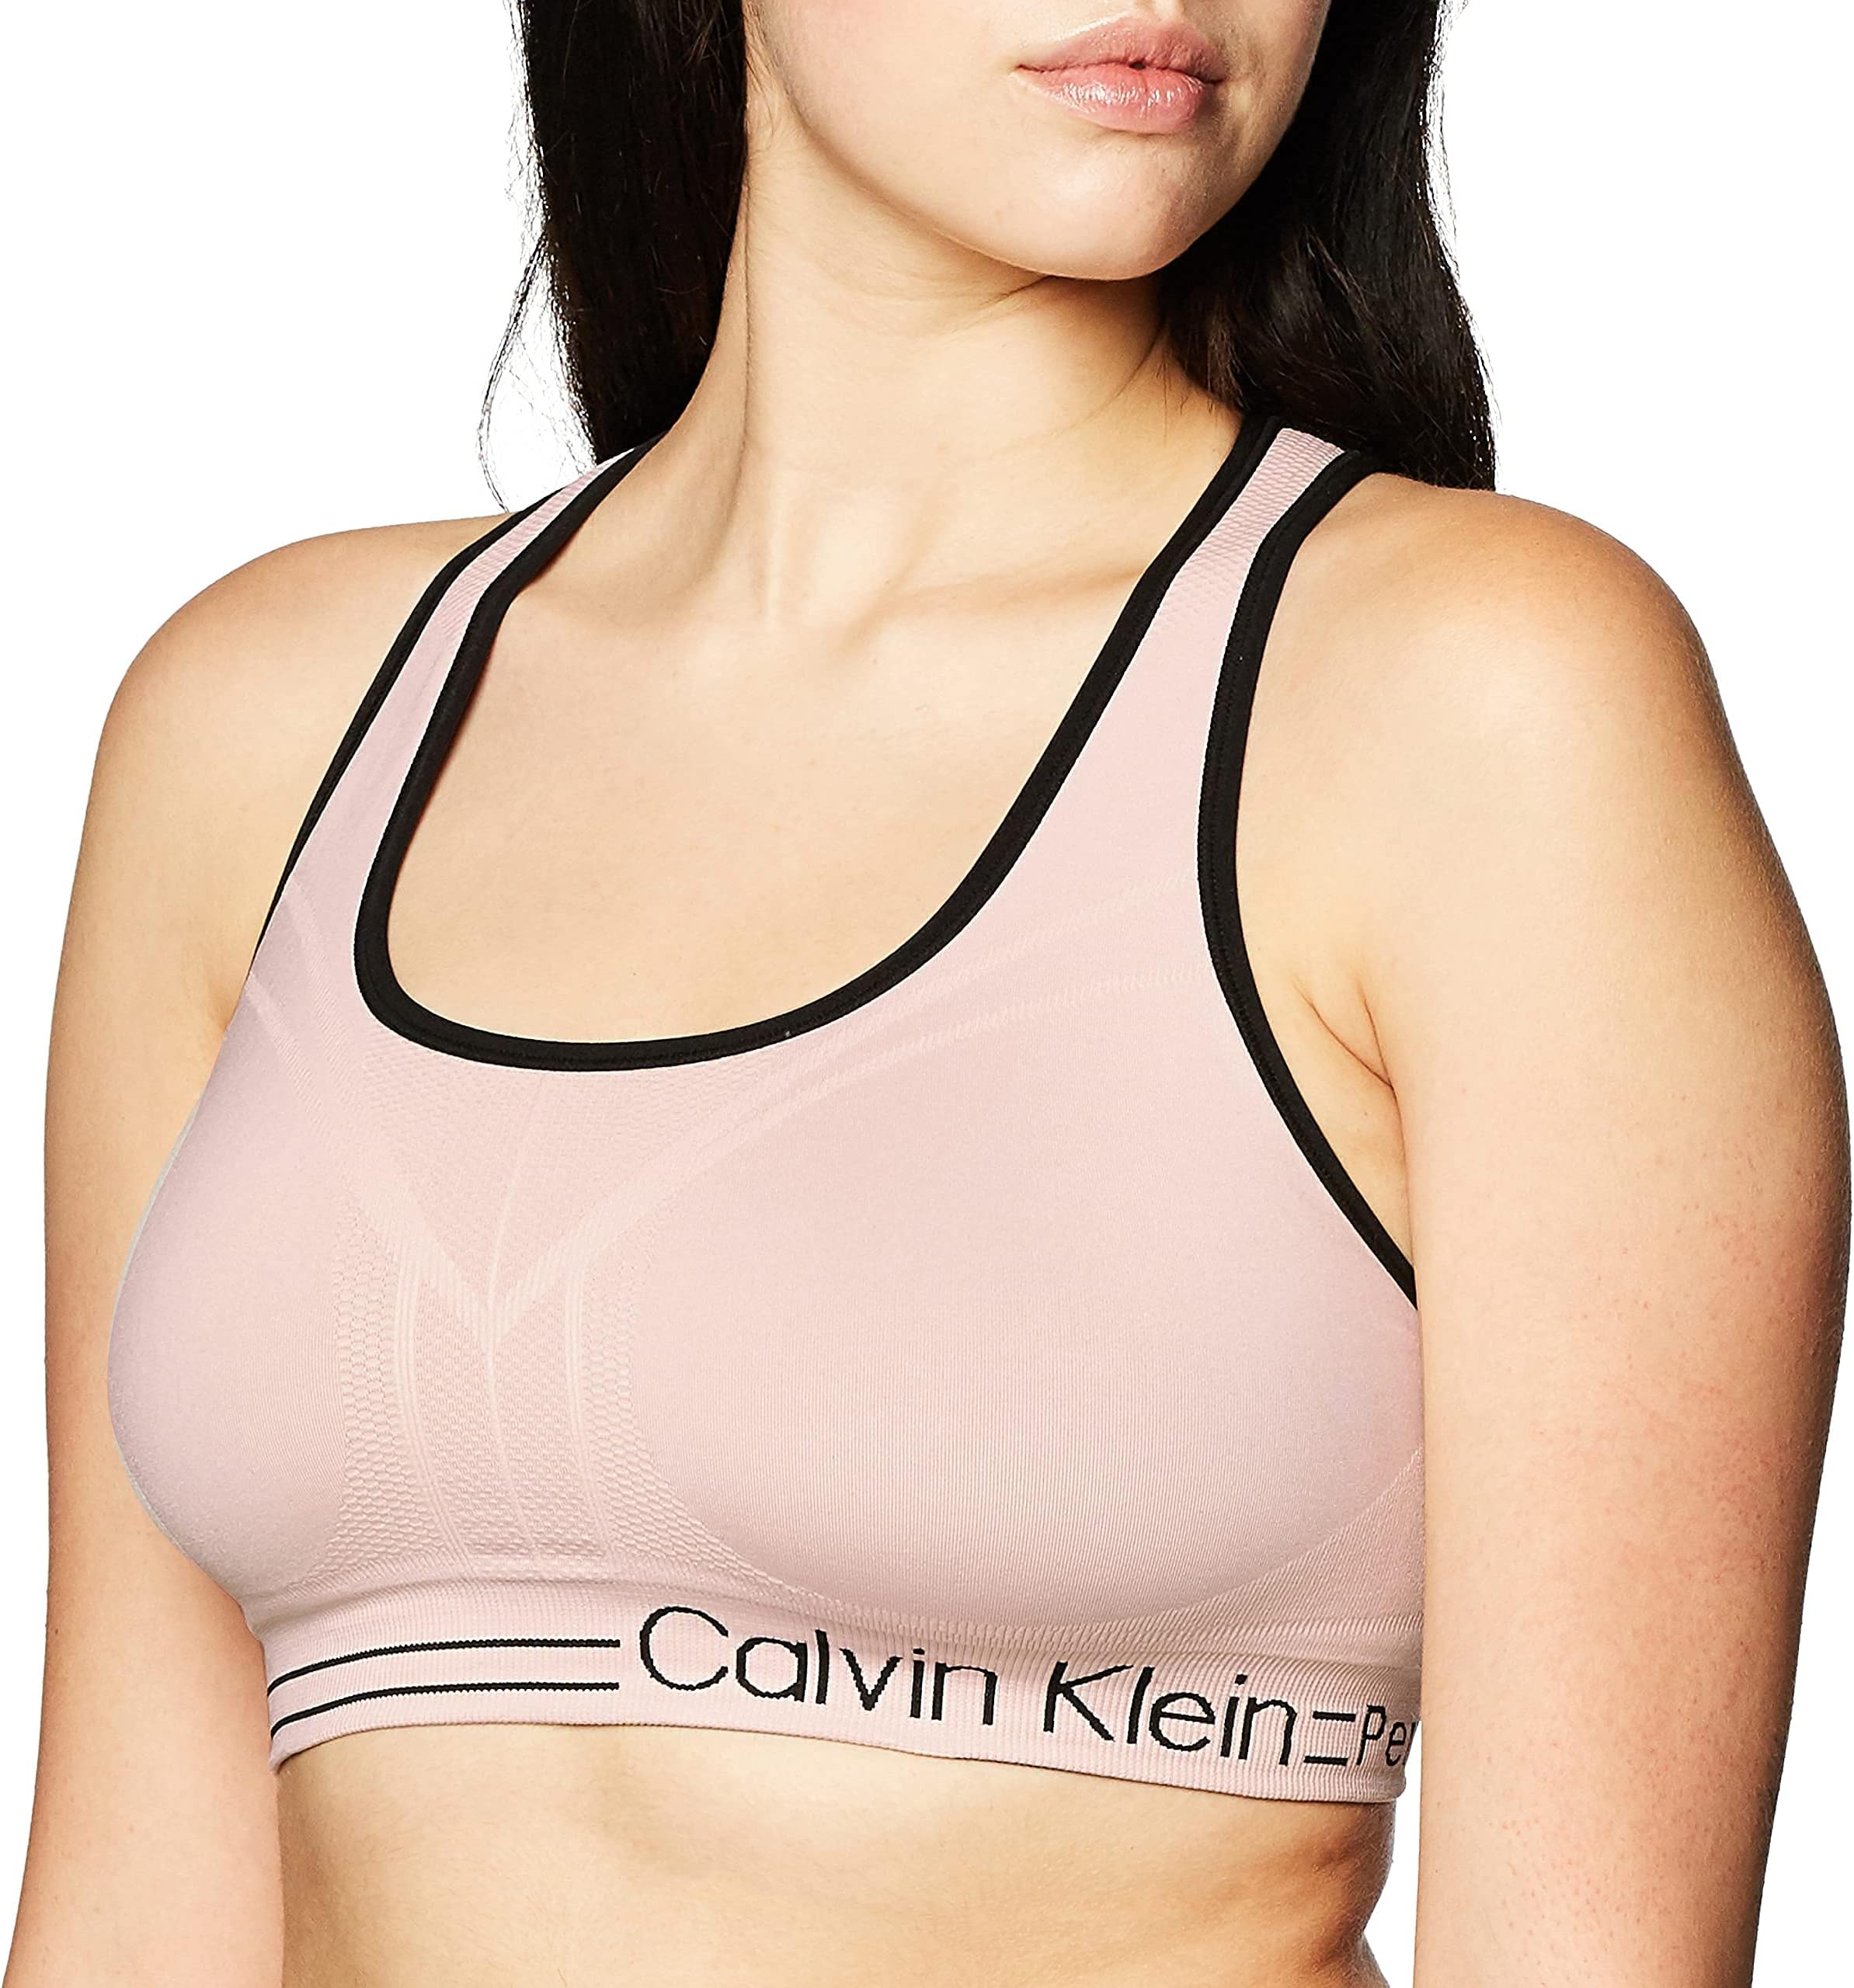 Женский двусторонний бесшовный спортивный бюстгальтер средней ударопрочности, впитывающий влагу Calvin Klein, цвет Seashell